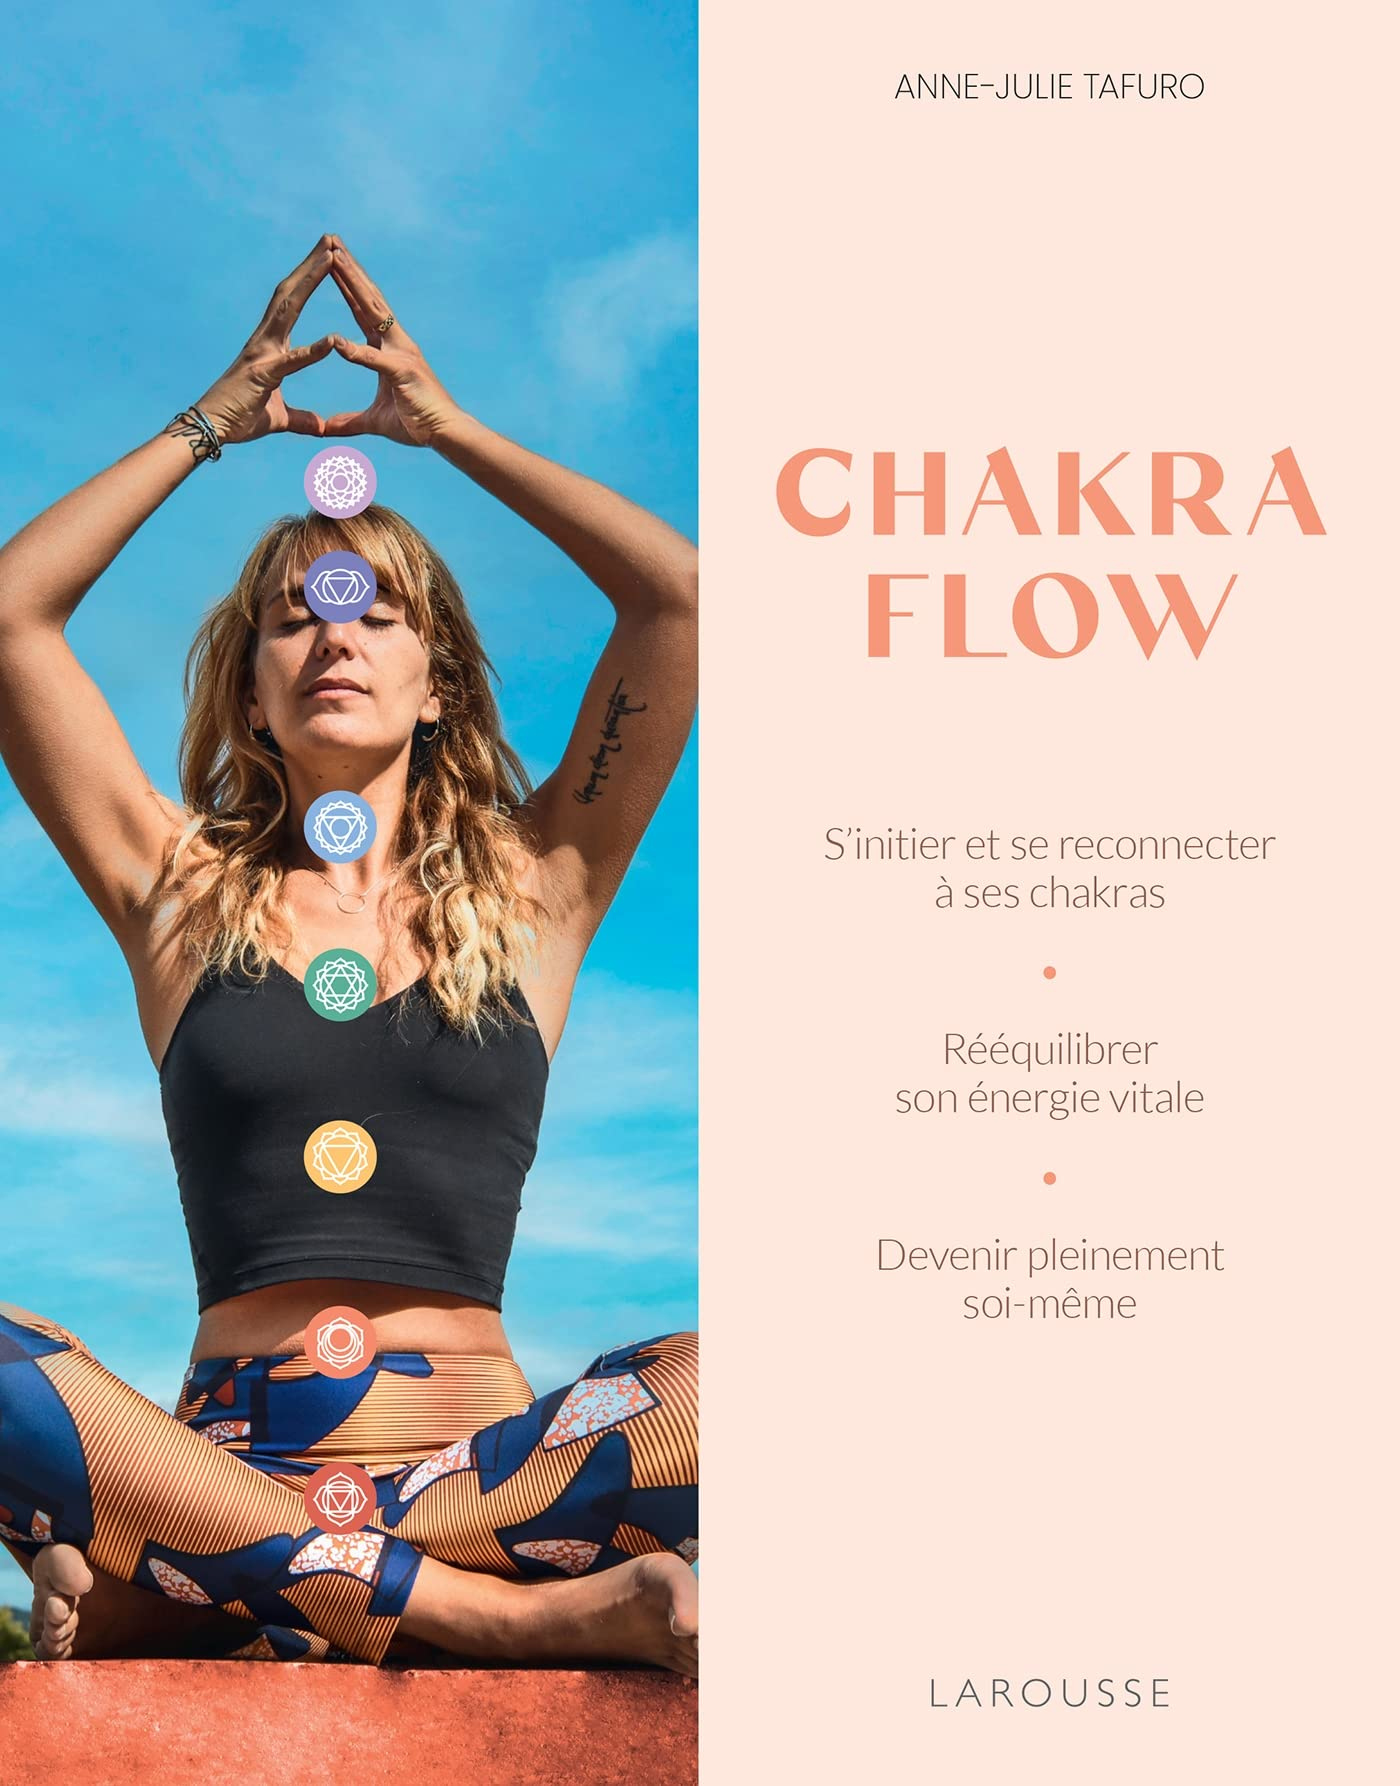 Chakra flow : s'initier et se reconnecter à ses chakras, rééquilibrer son énergie vitale, devenir pl